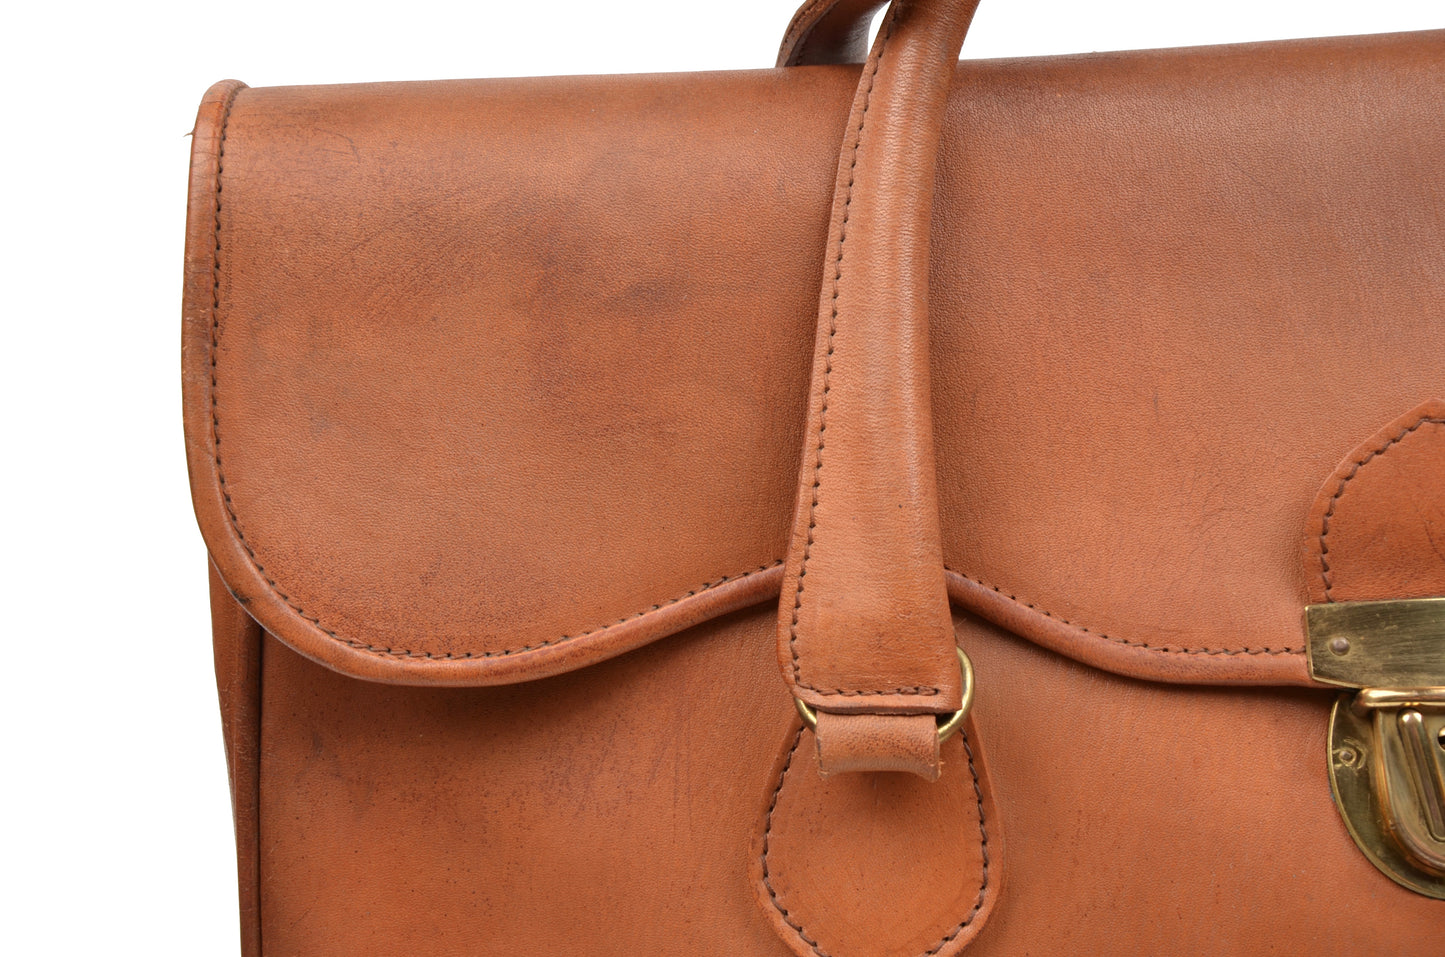 Vintage Leather Weekender Bag - Tan